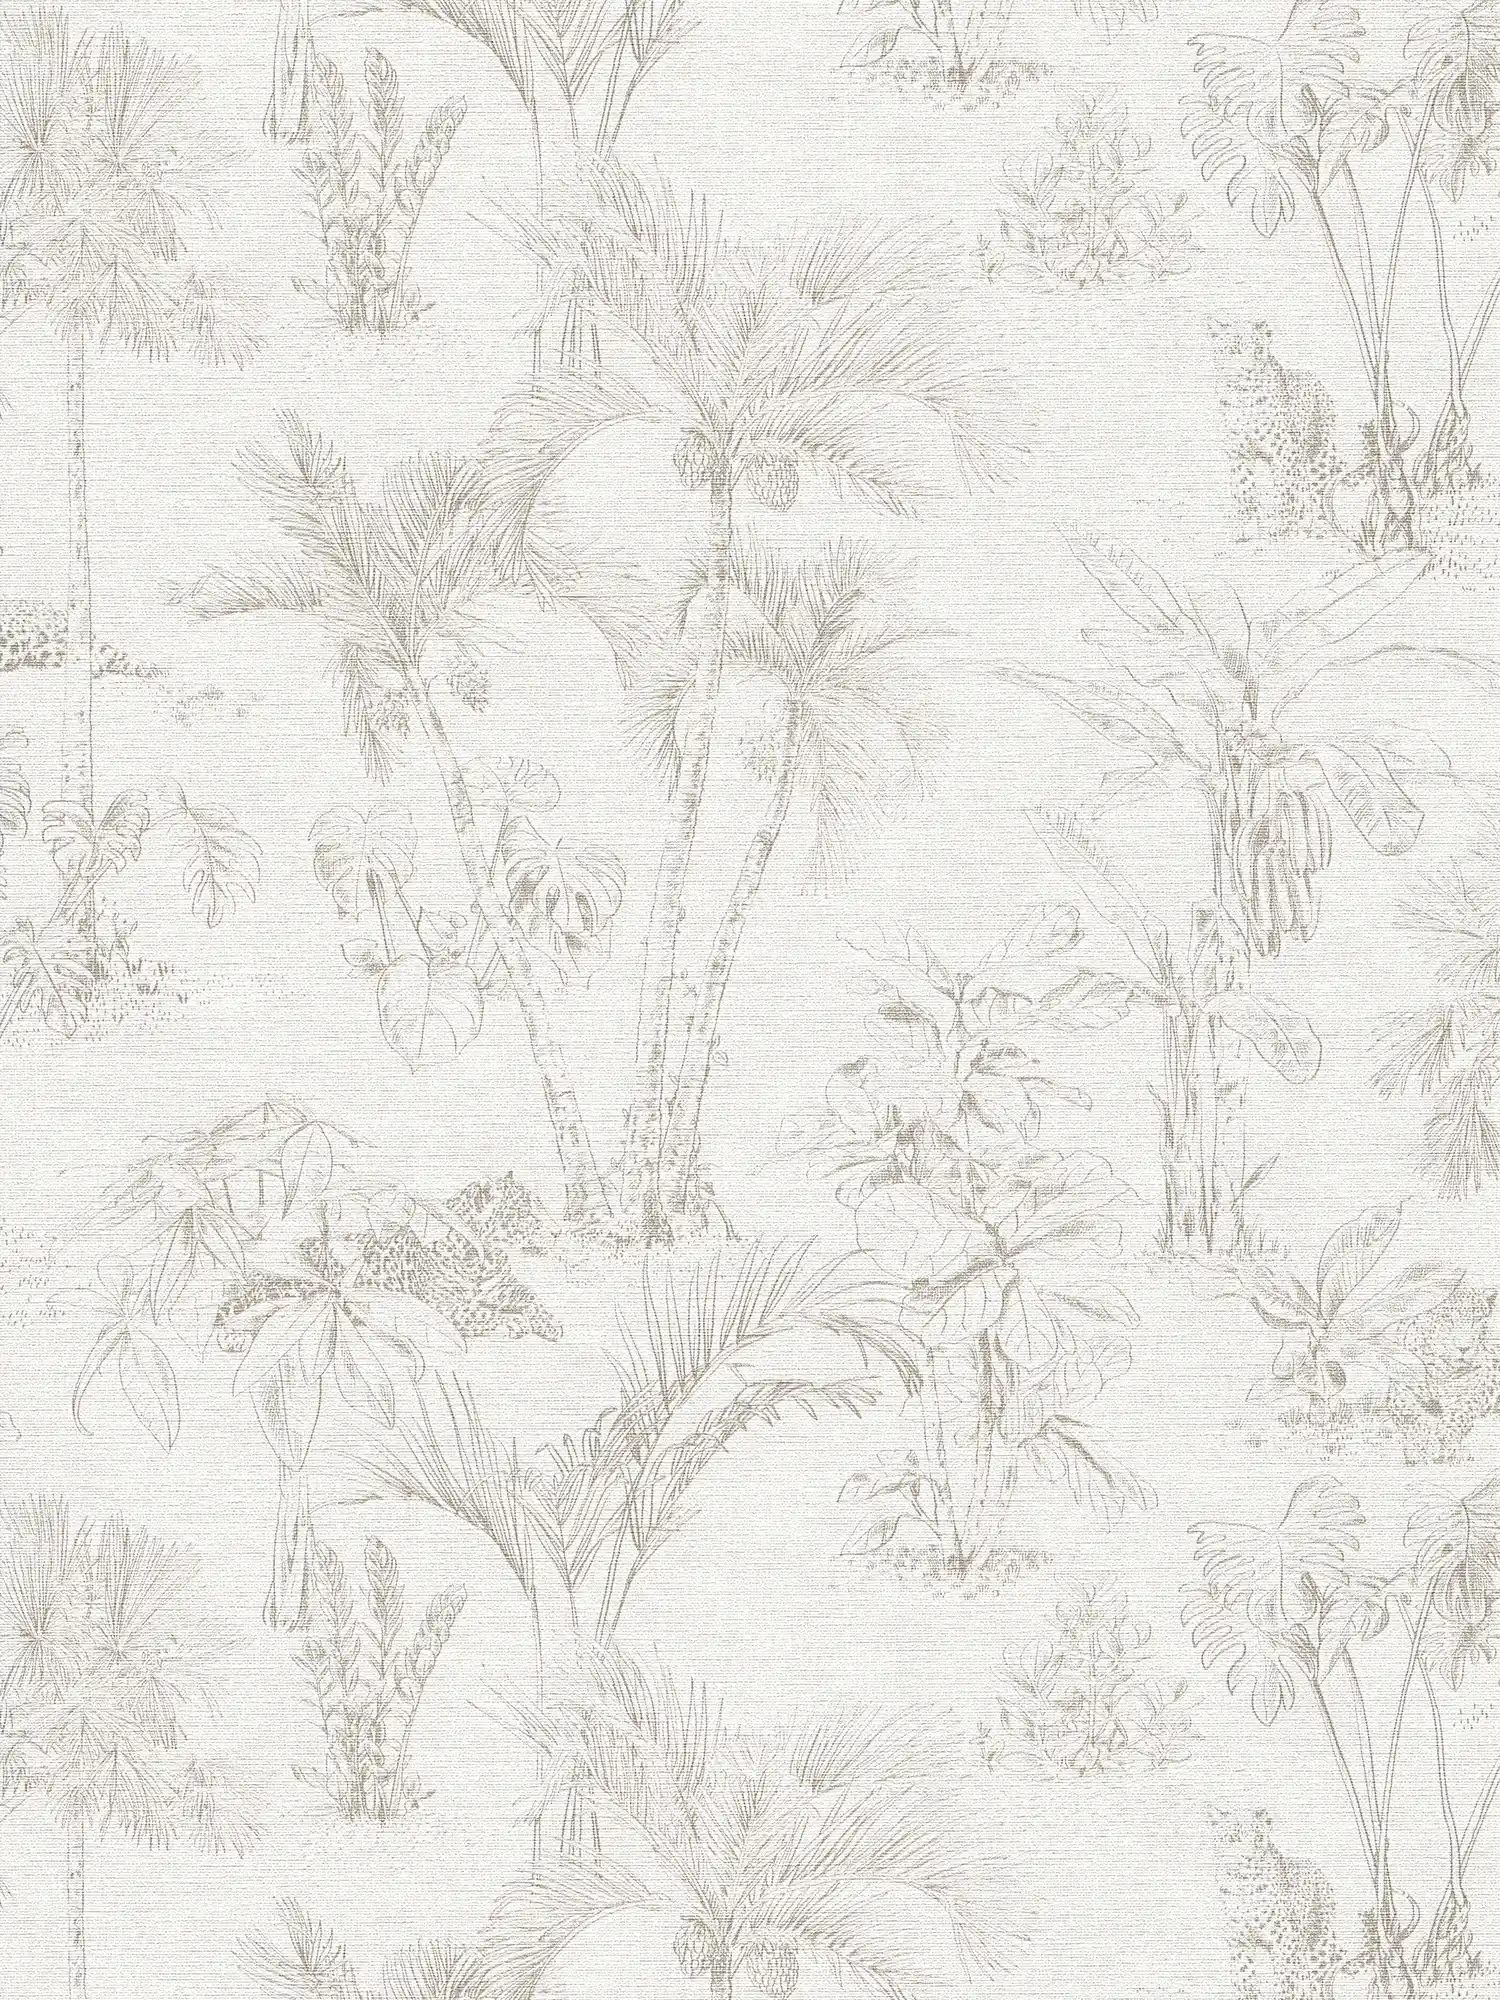 Jungle behang met palmbladeren & dierenmotief - beige, grijs
